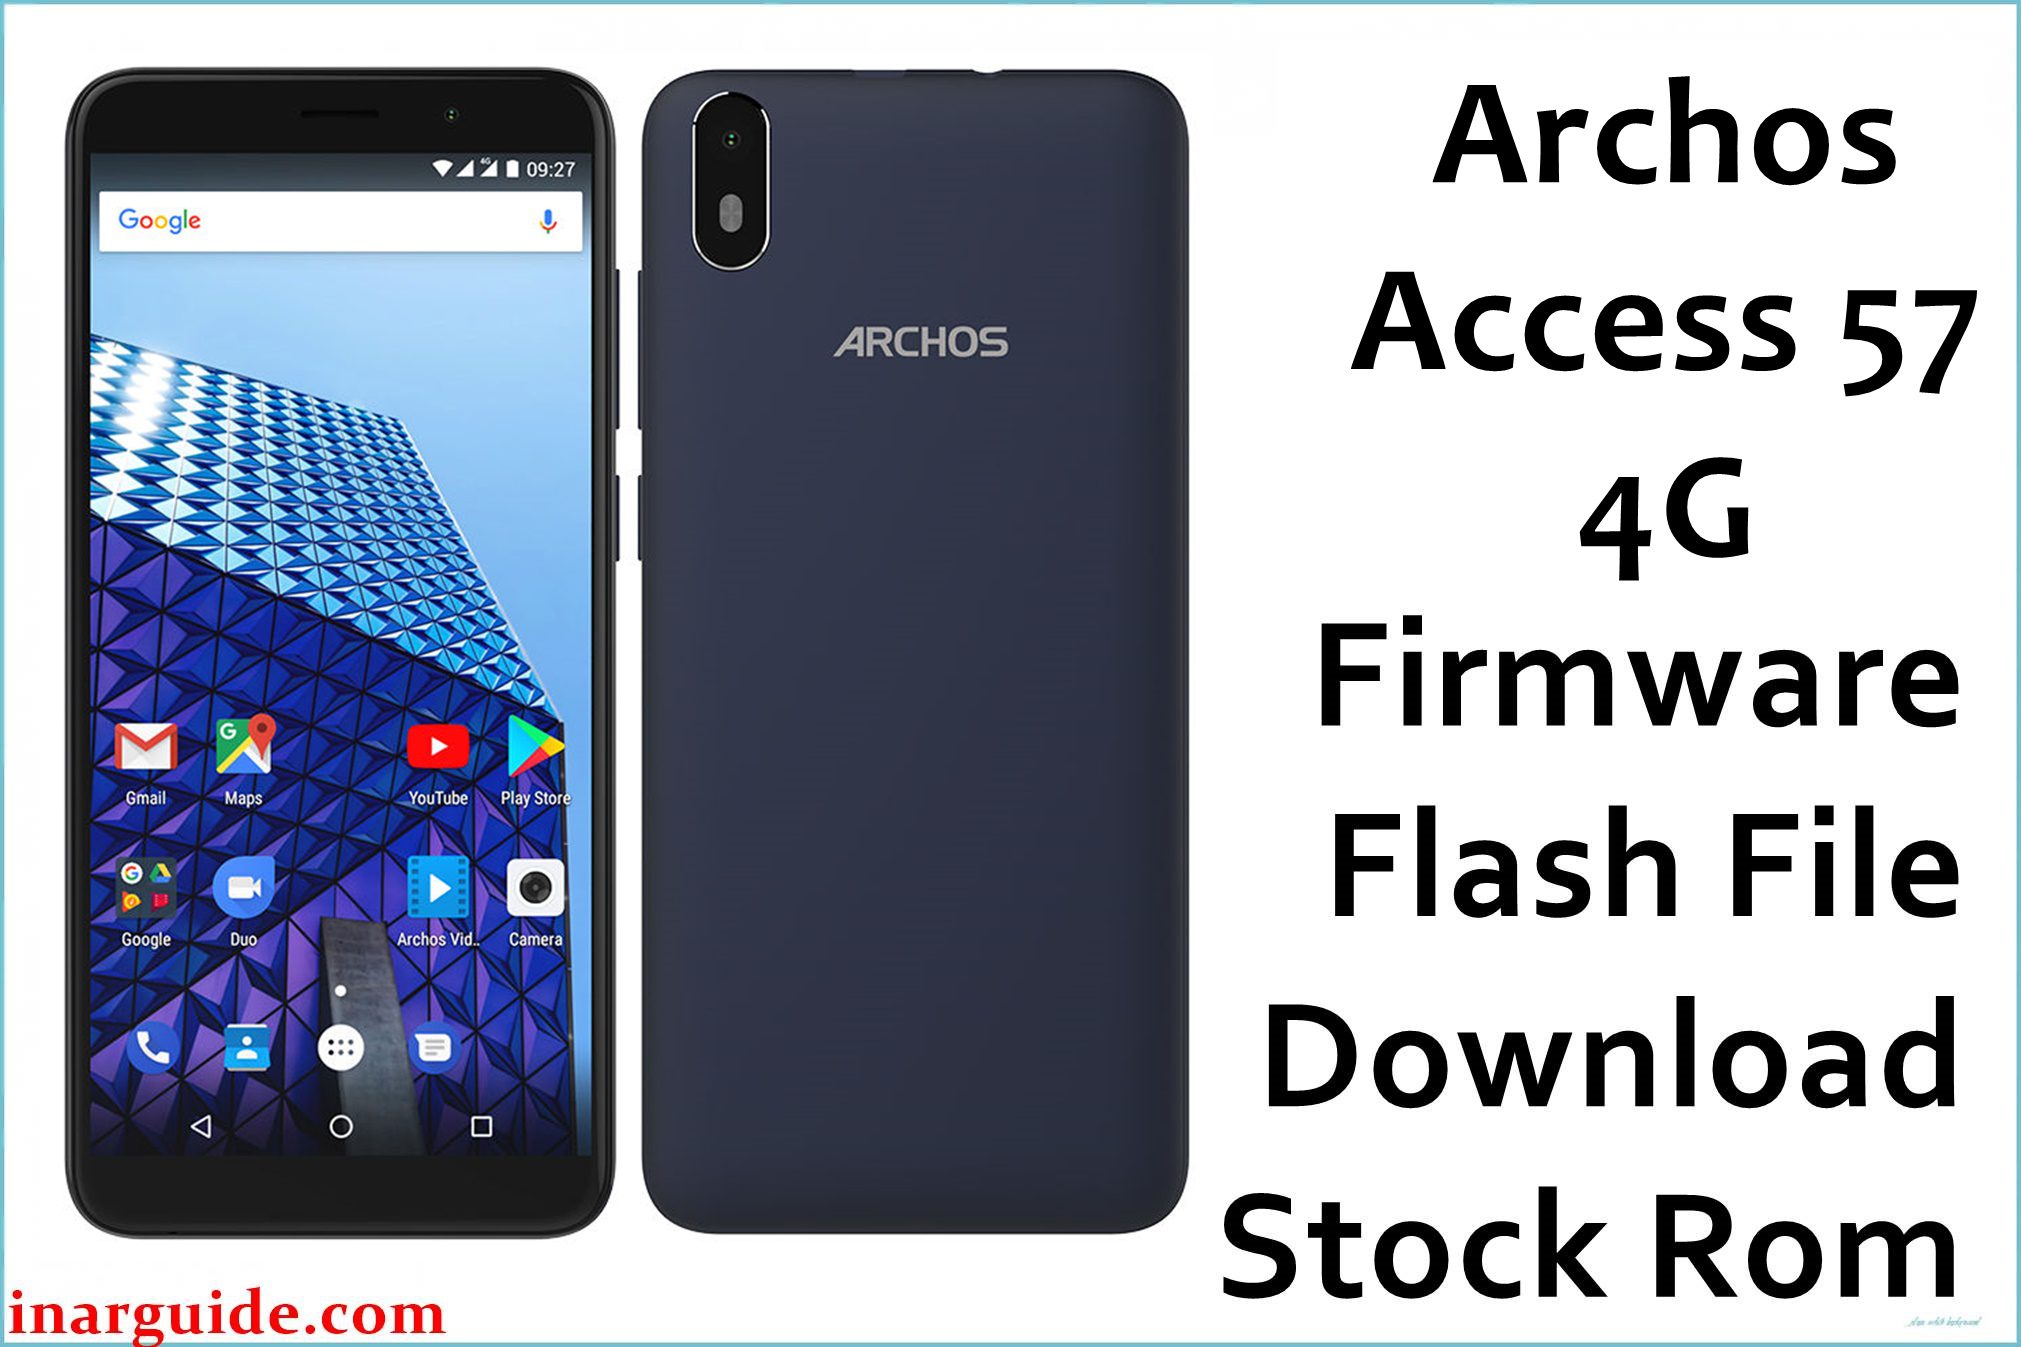 Archos Access 57 4G